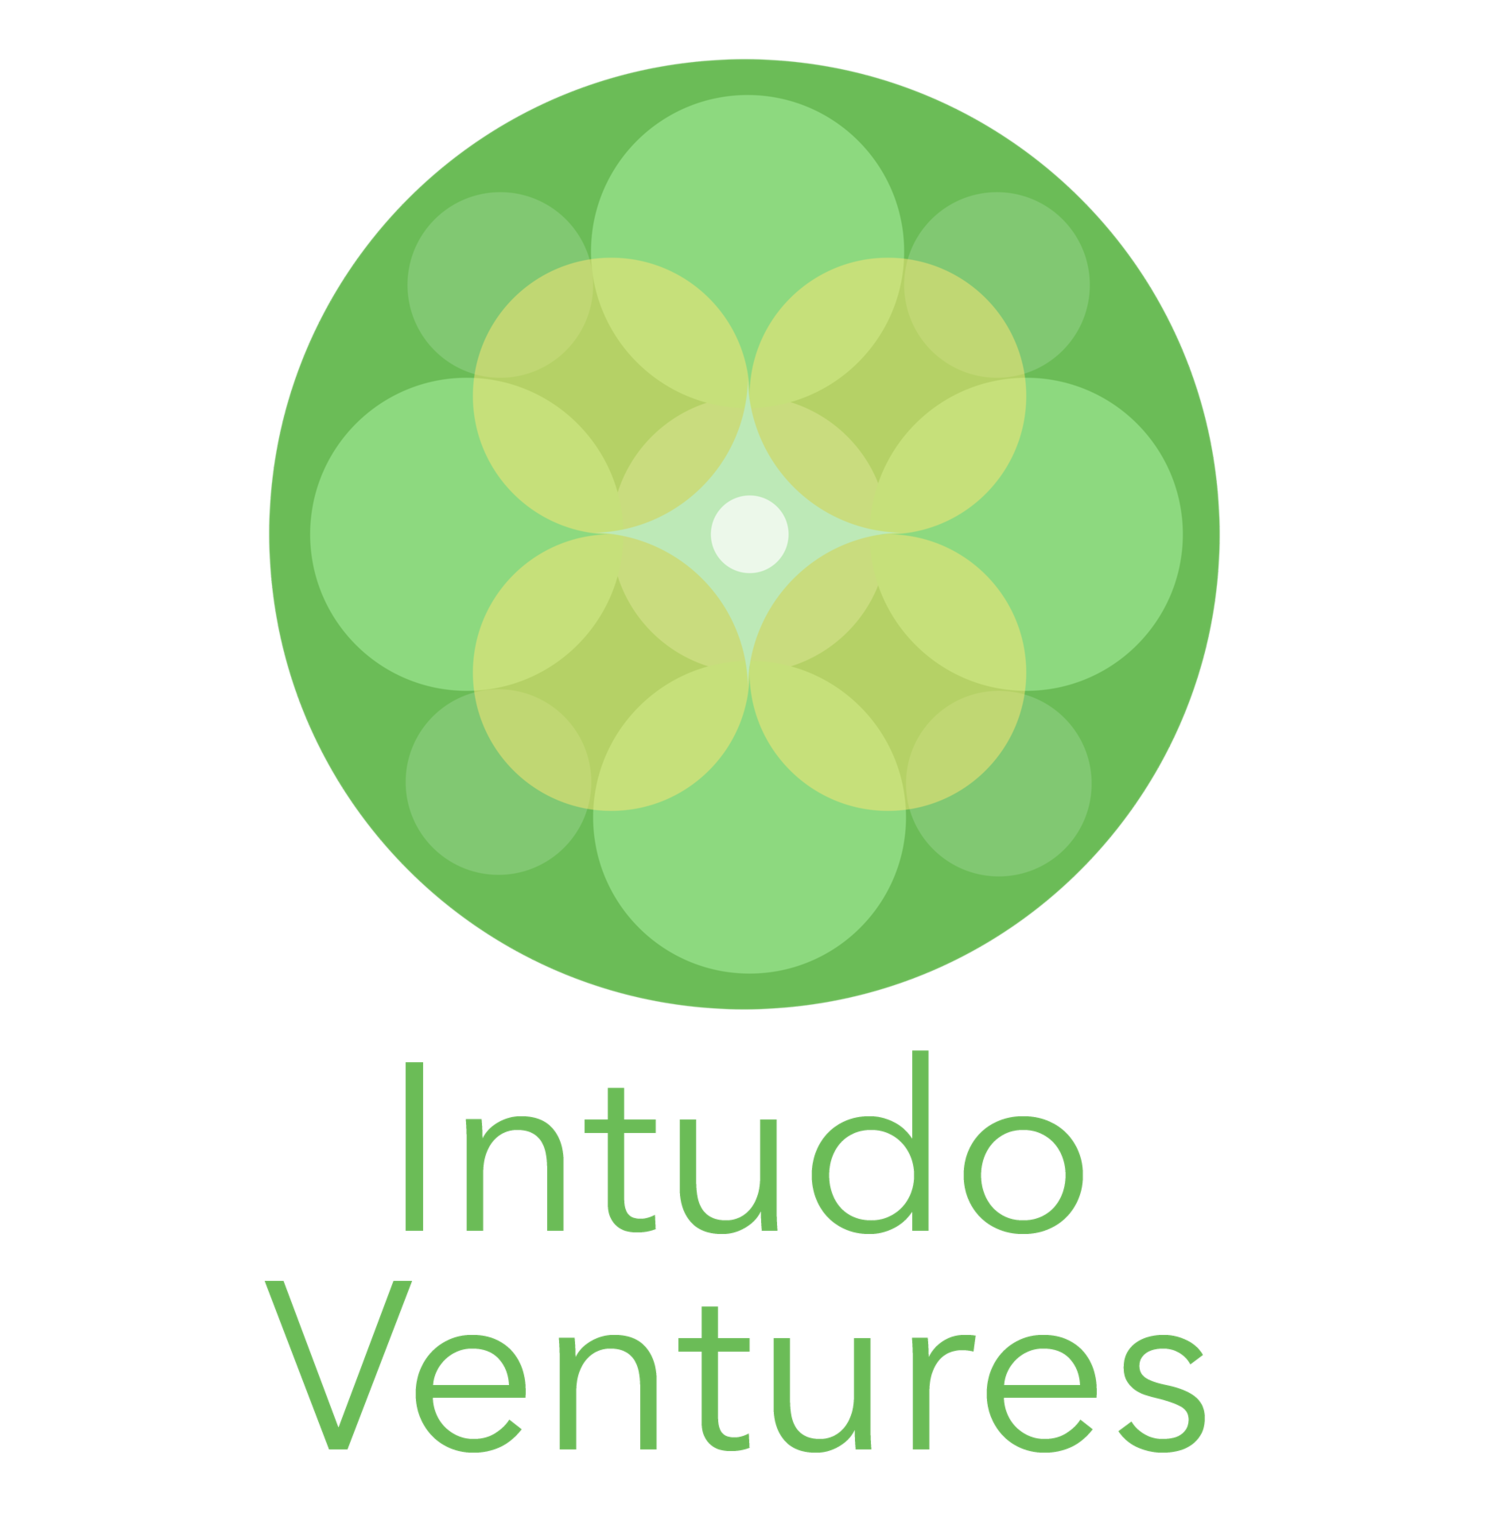 Intudo Ventures